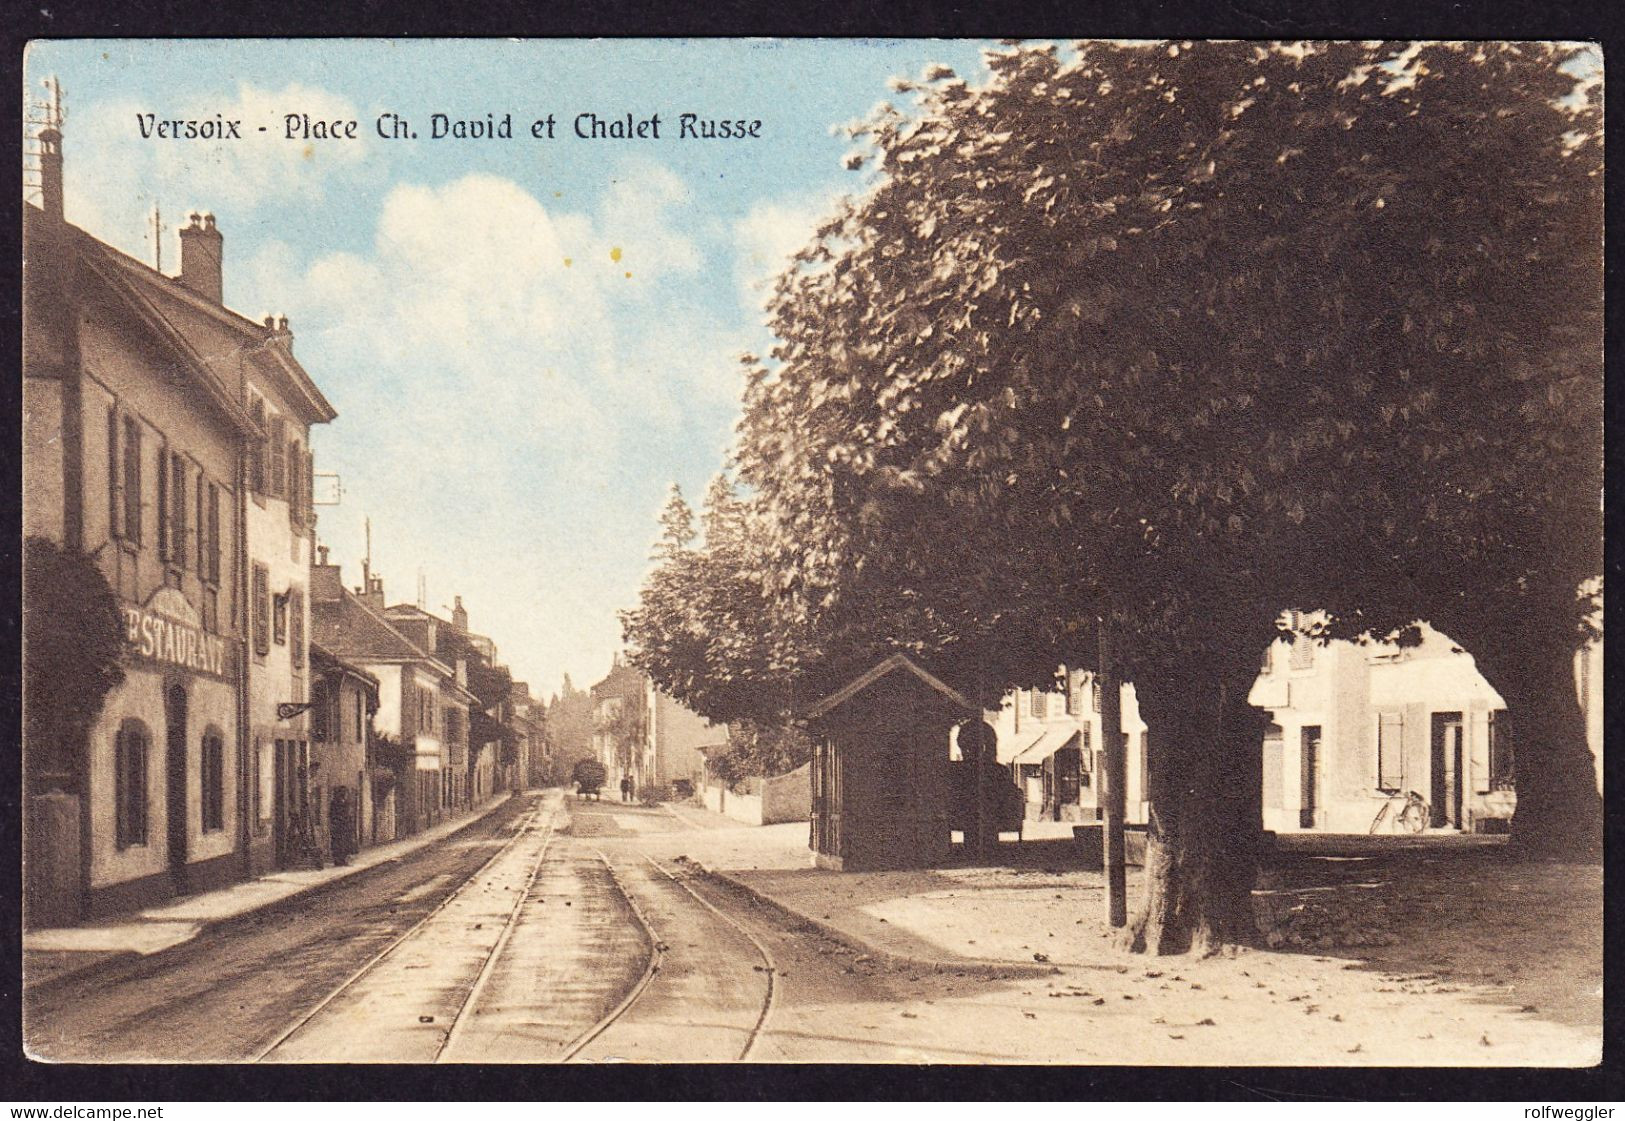 1920 Gelaufene AK Aus Versoix, Place Ch. David Et Chalet Russe. Mit Tramgeleisen. Rückseitig Minim Fleckig. - Versoix